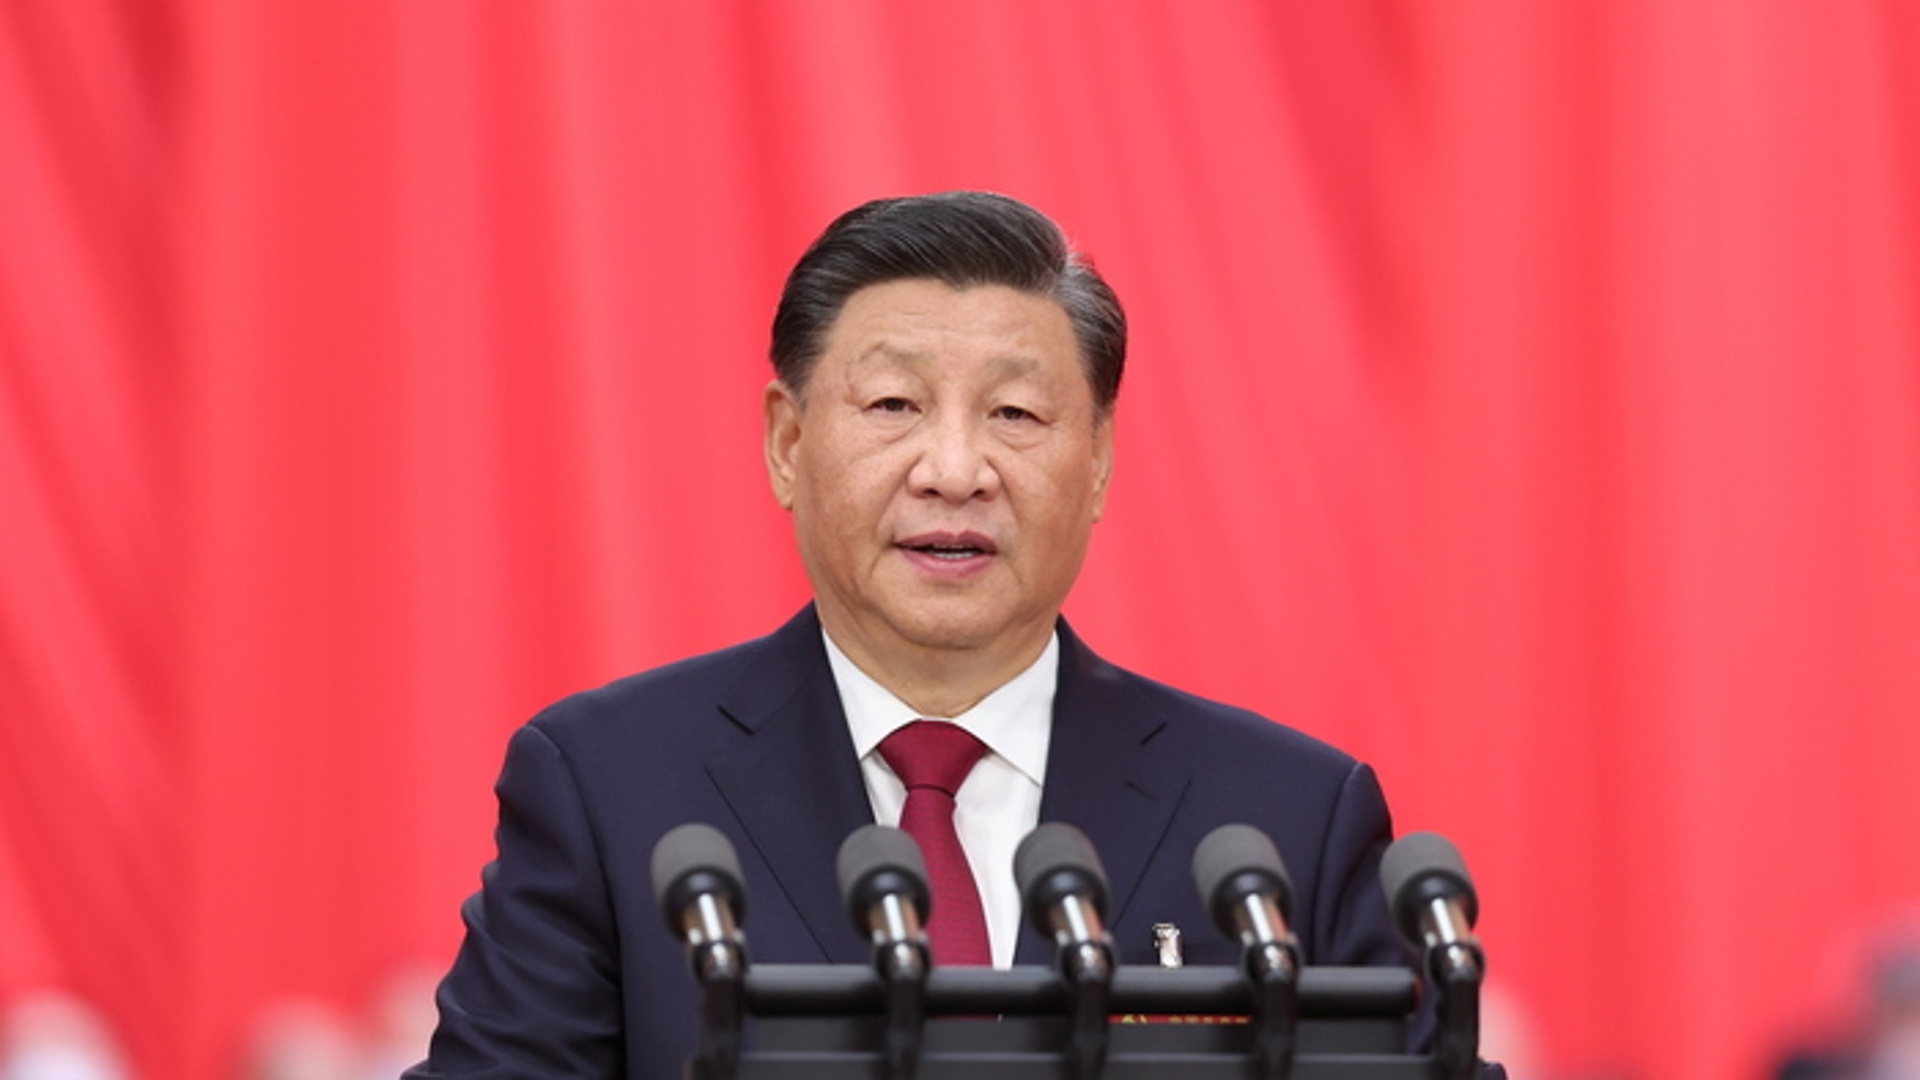 Cina, Xi Jinping: "Ci opporremo con fermezza all'indipendenza di Taiwan"